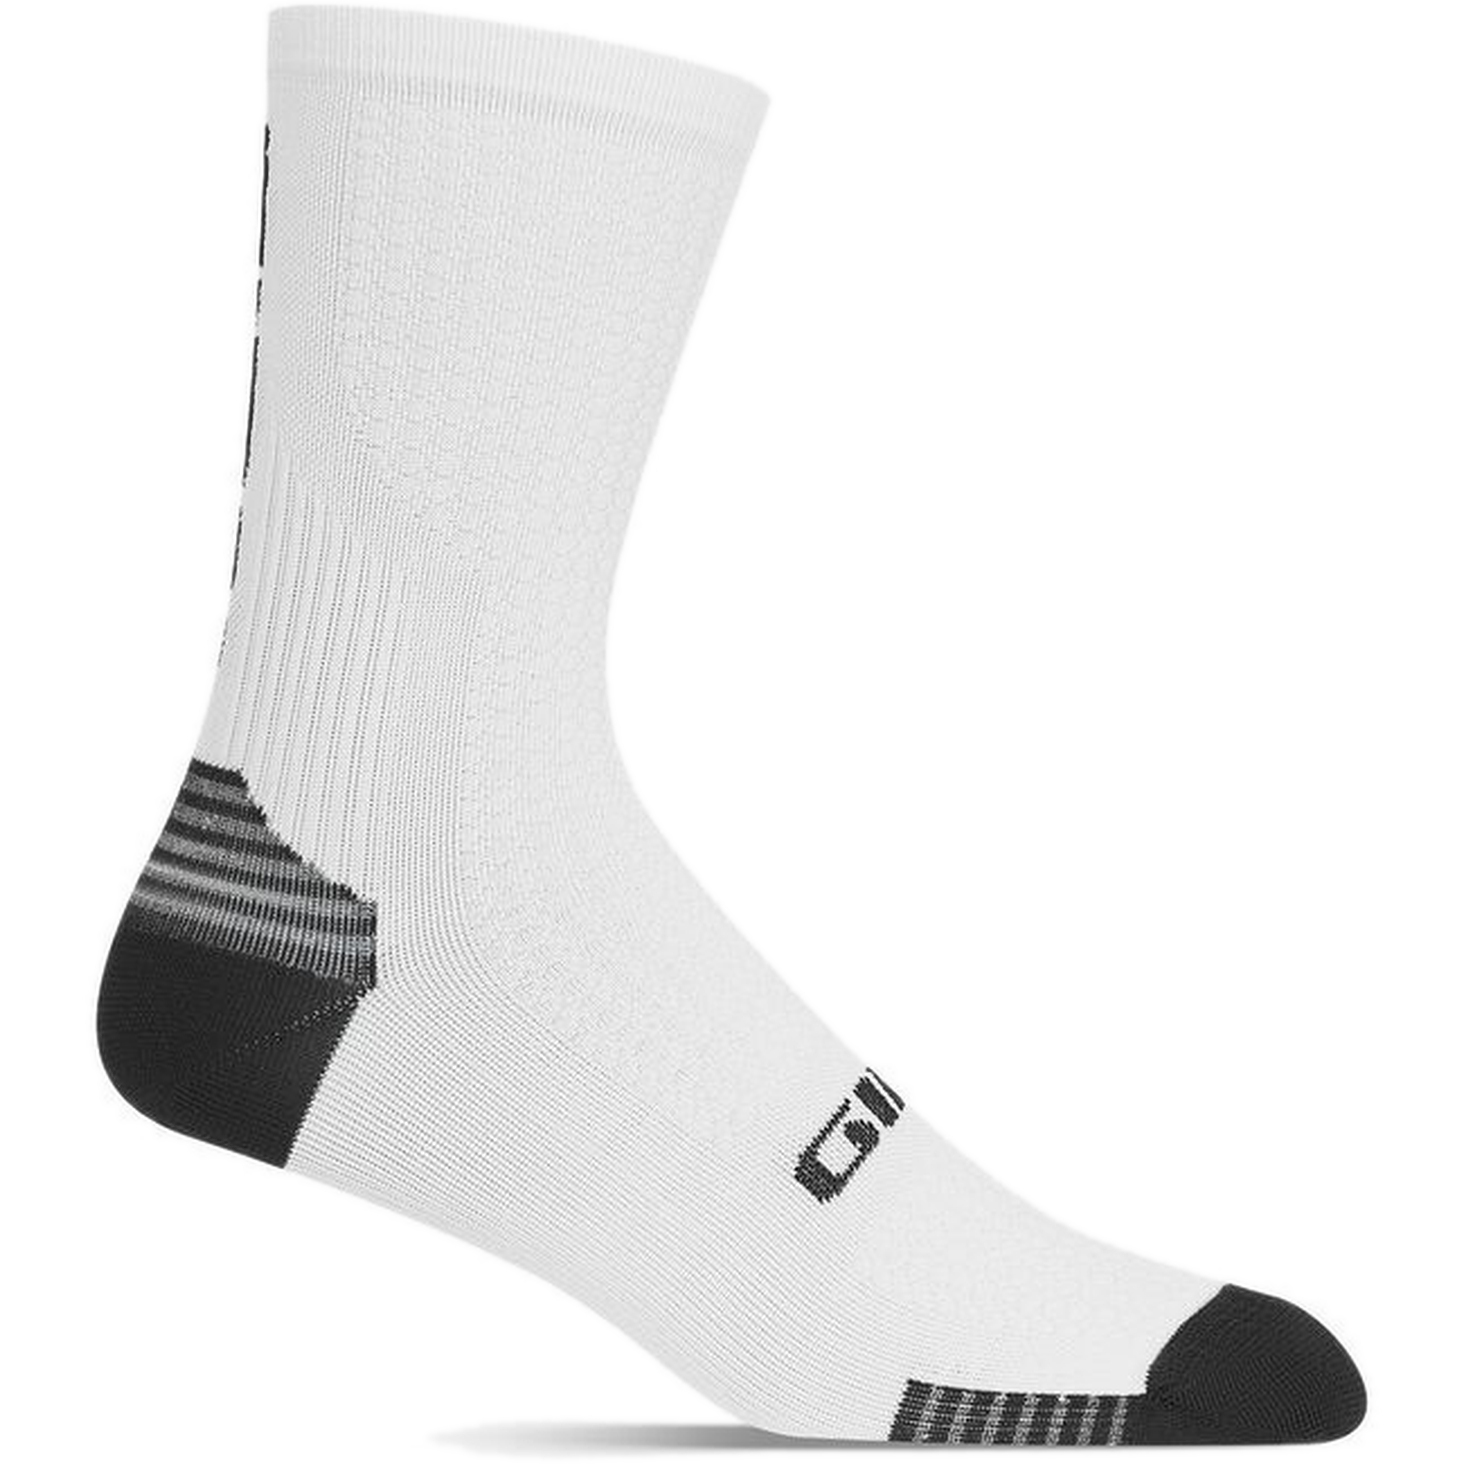 Bild von Giro HRC+ Grip Socken - white/black